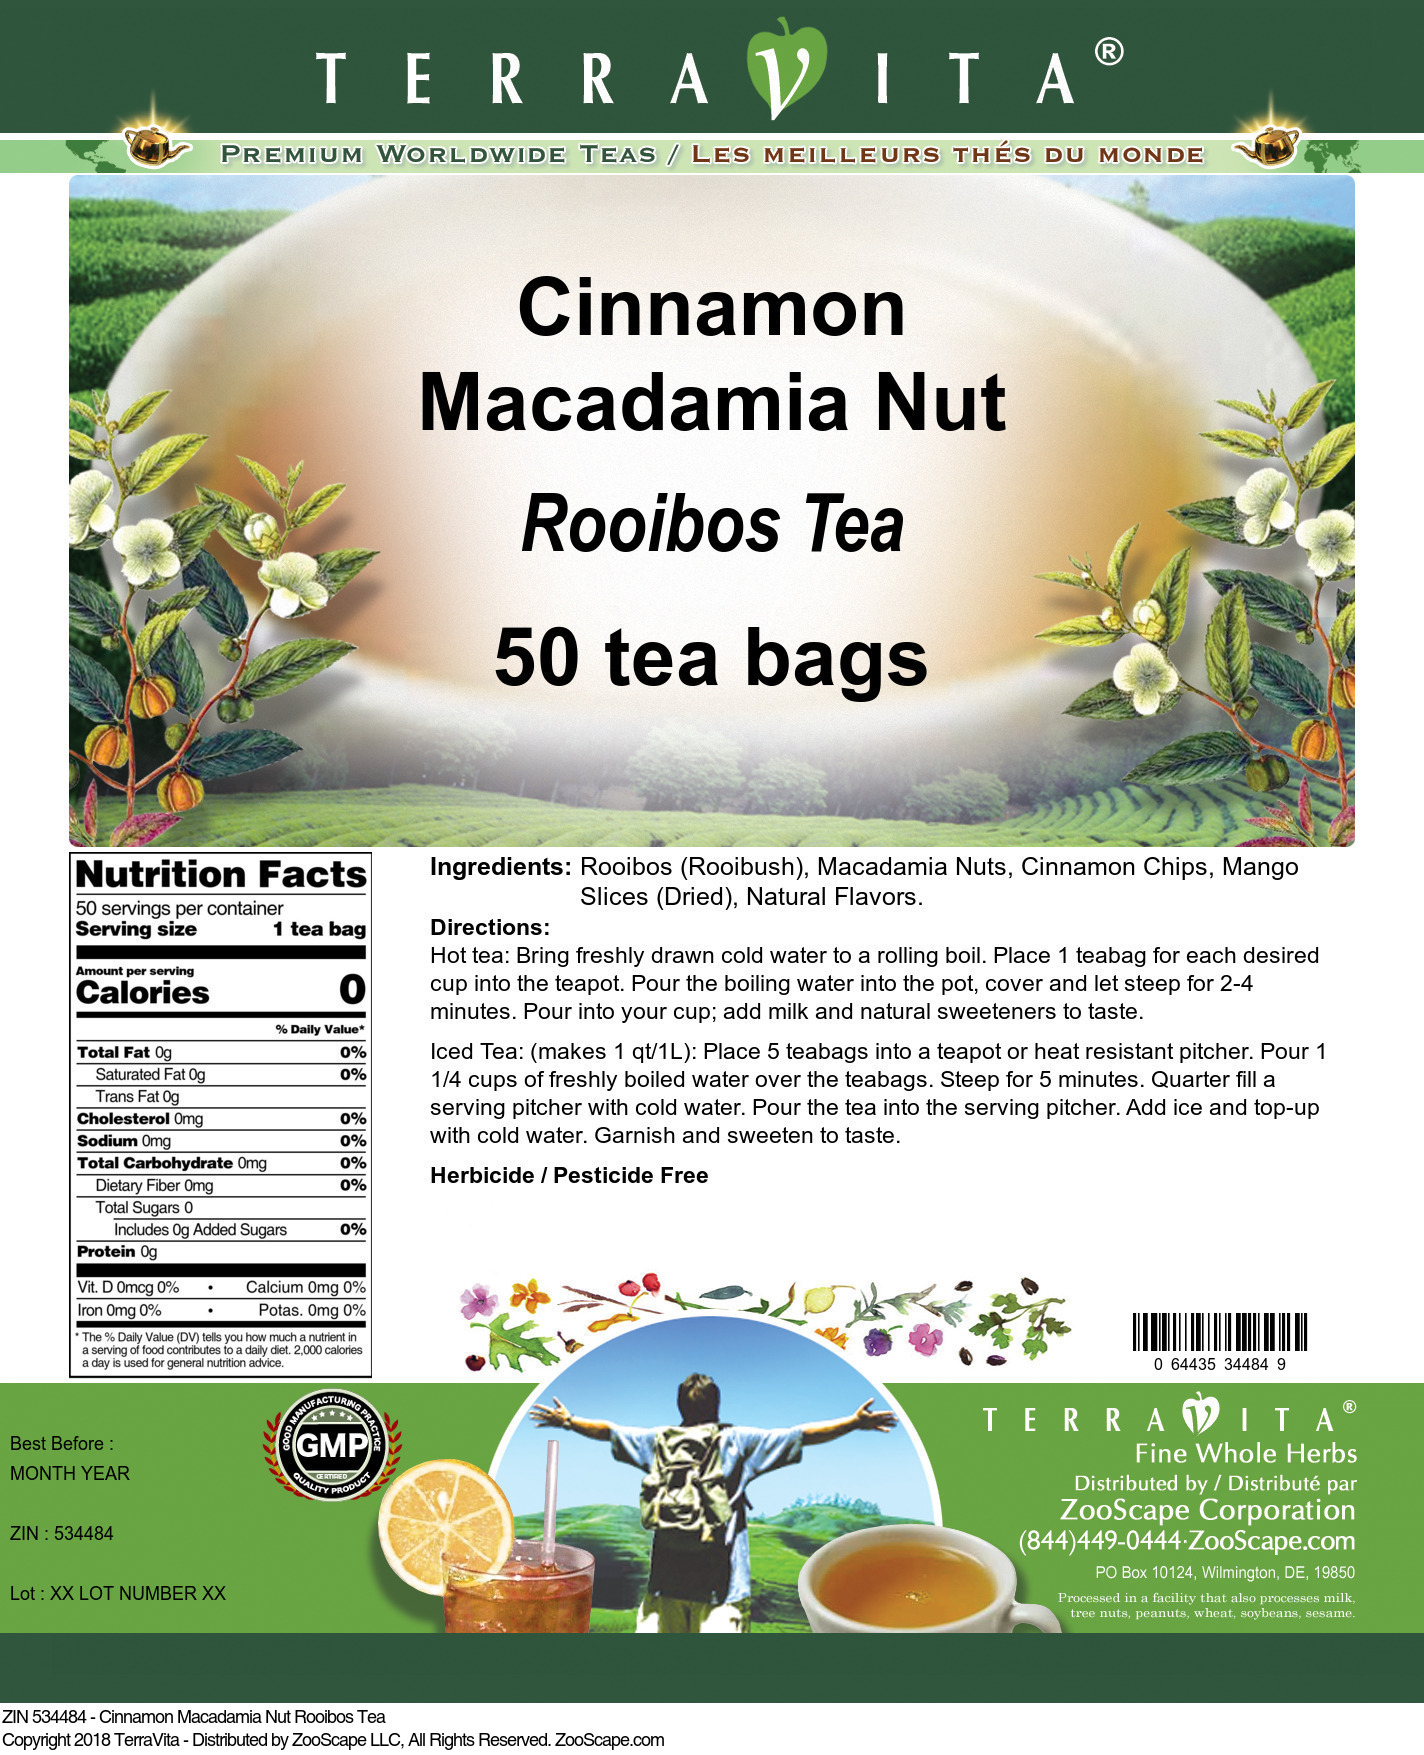 Cinnamon Macadamia Nut Rooibos Tea - Label